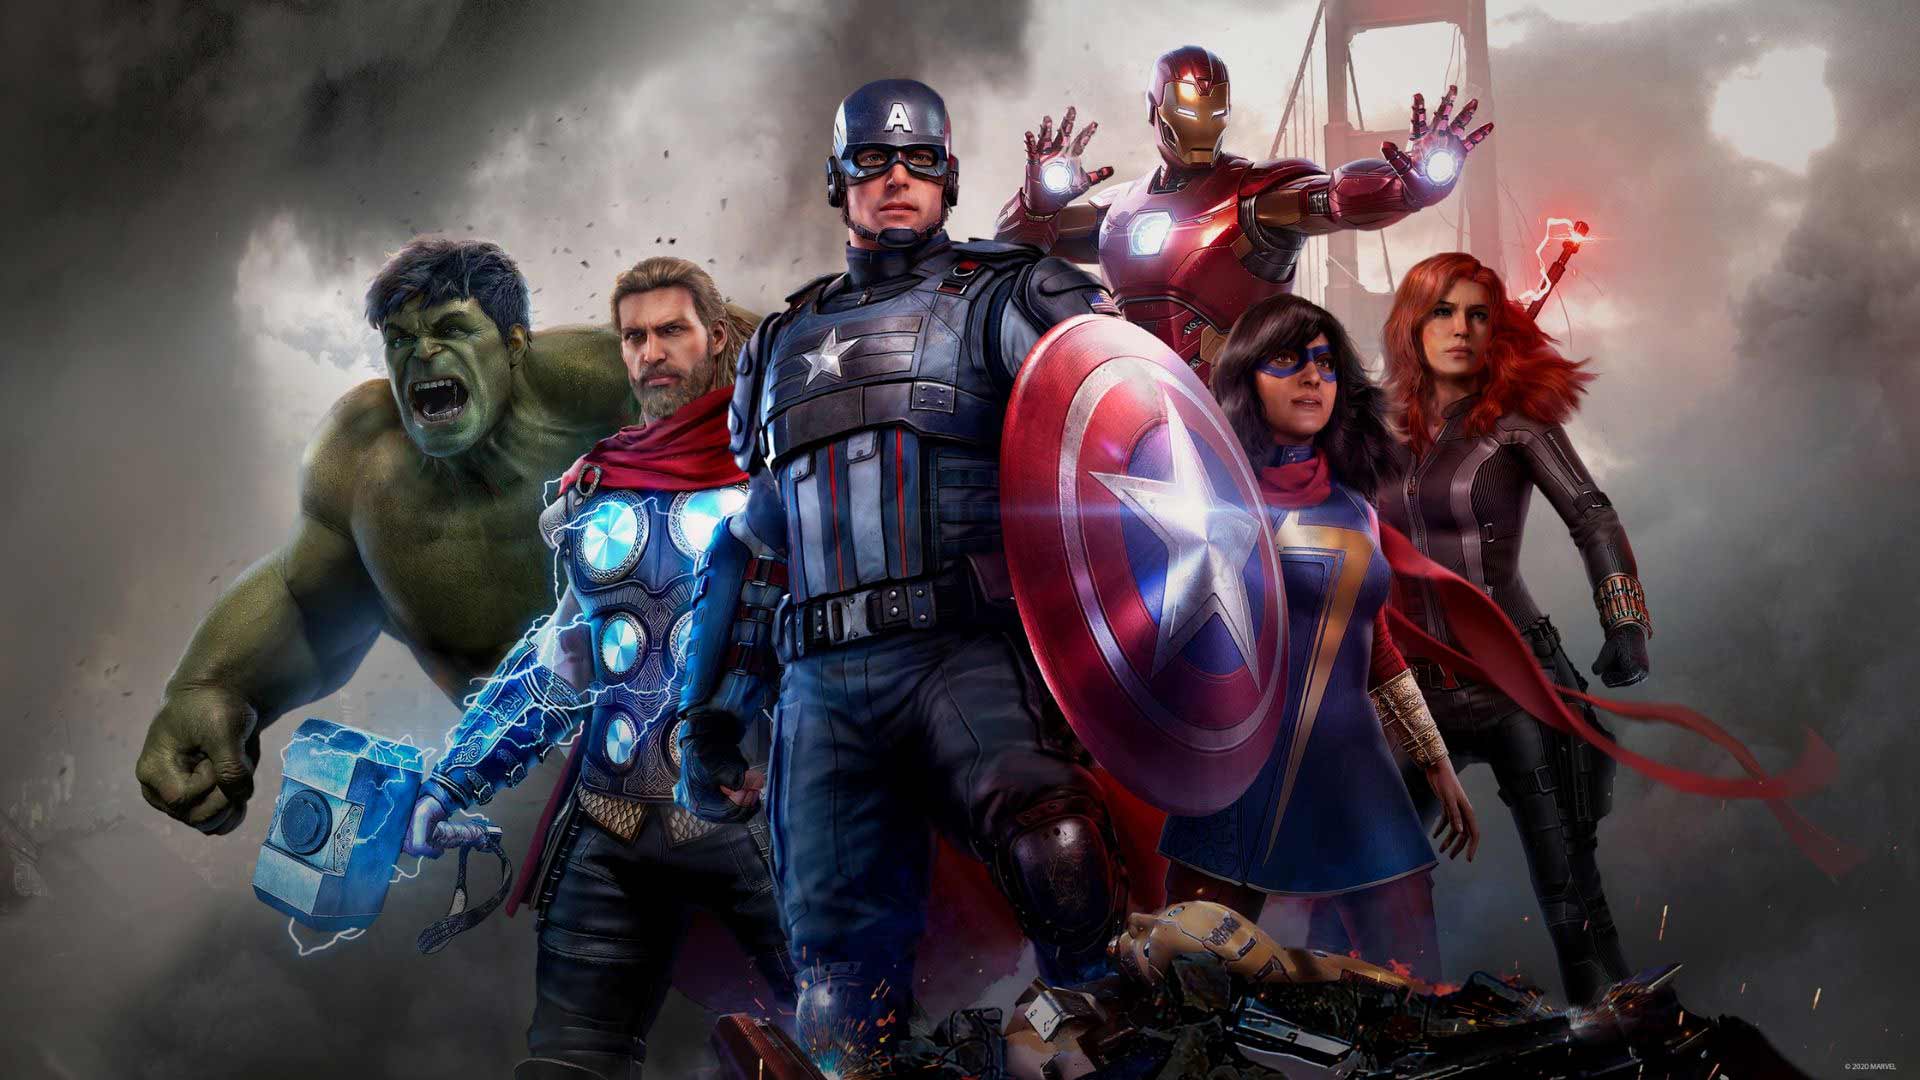 تاریخ انتشار بازی Marvel's Avengers برای کنسول های نسل جدید مشخص شد